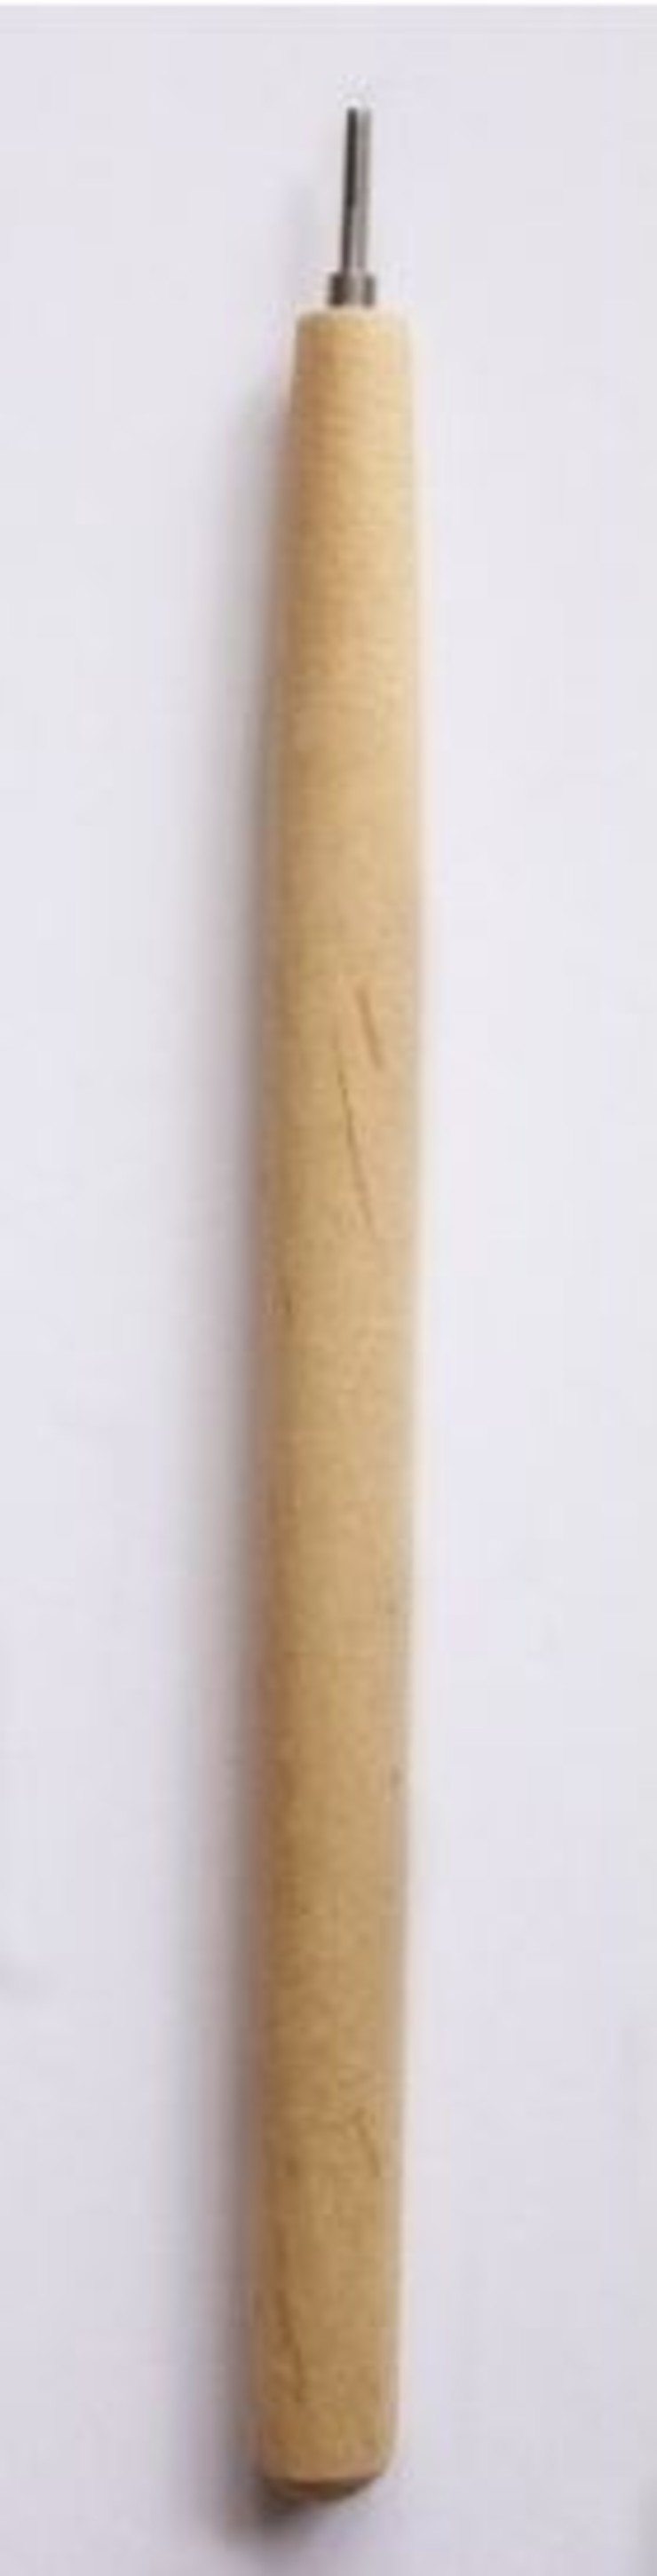 Инструмент для квиллинга с деревянной ручкой